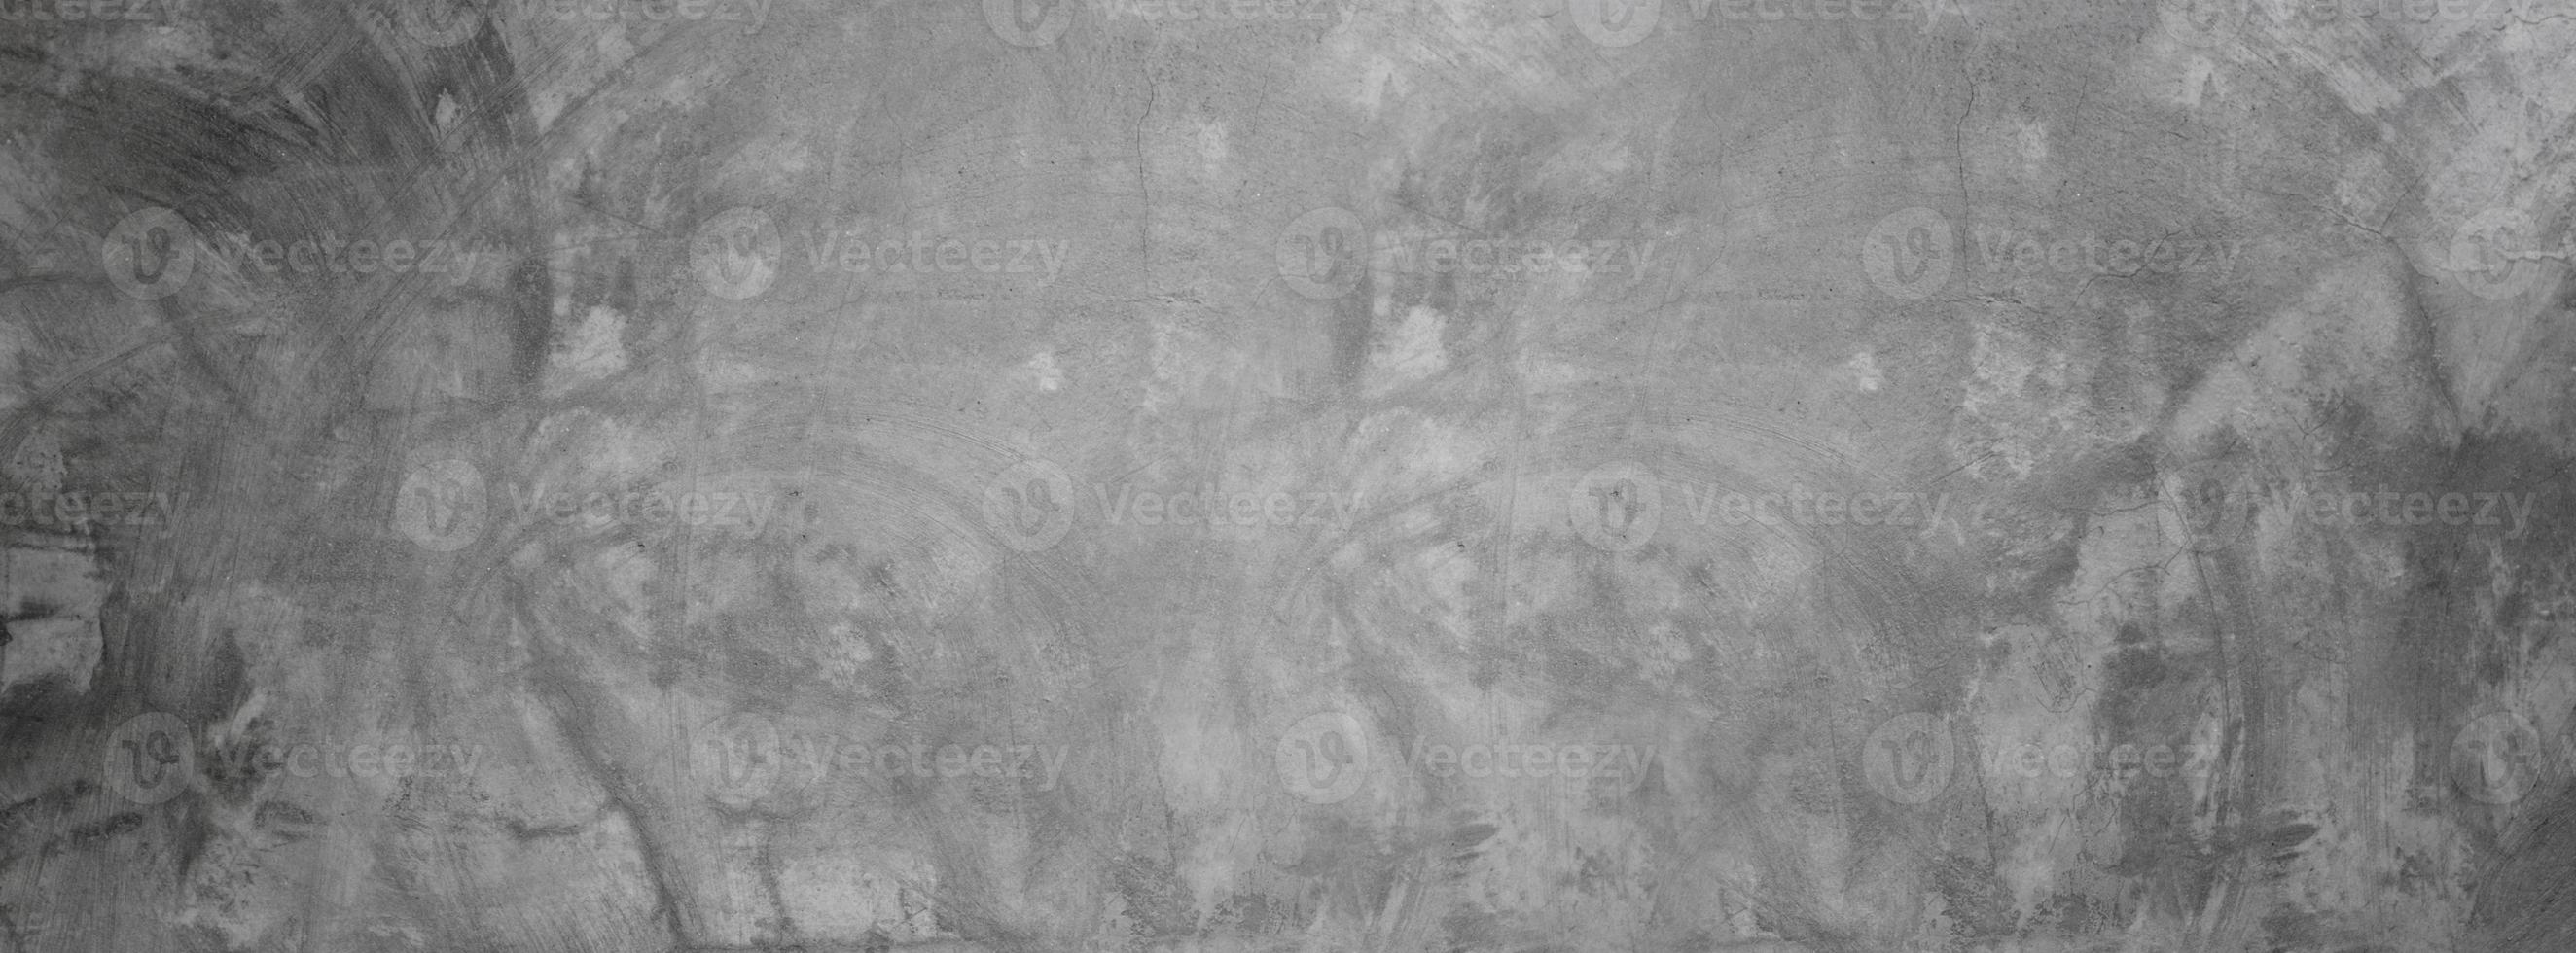 Mur de texture de ciment grungy, fond de bannière de béton gris pour toile de fond photo